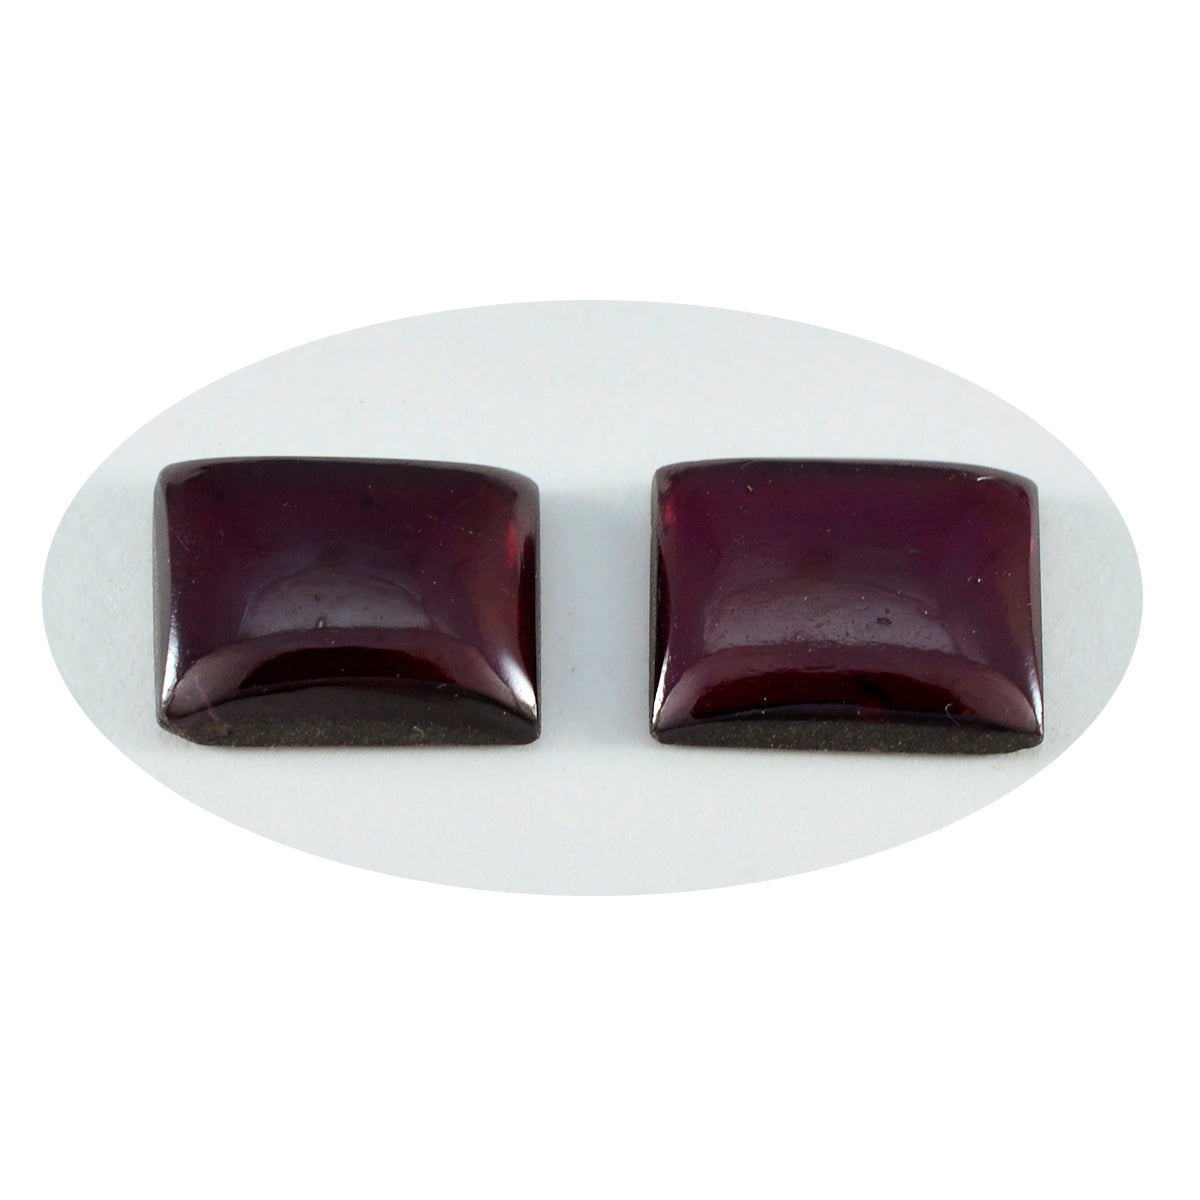 Riyogems 1PC Red Garnet Cabochon 12x16 mm Octagon Shape amazing Quality Gems